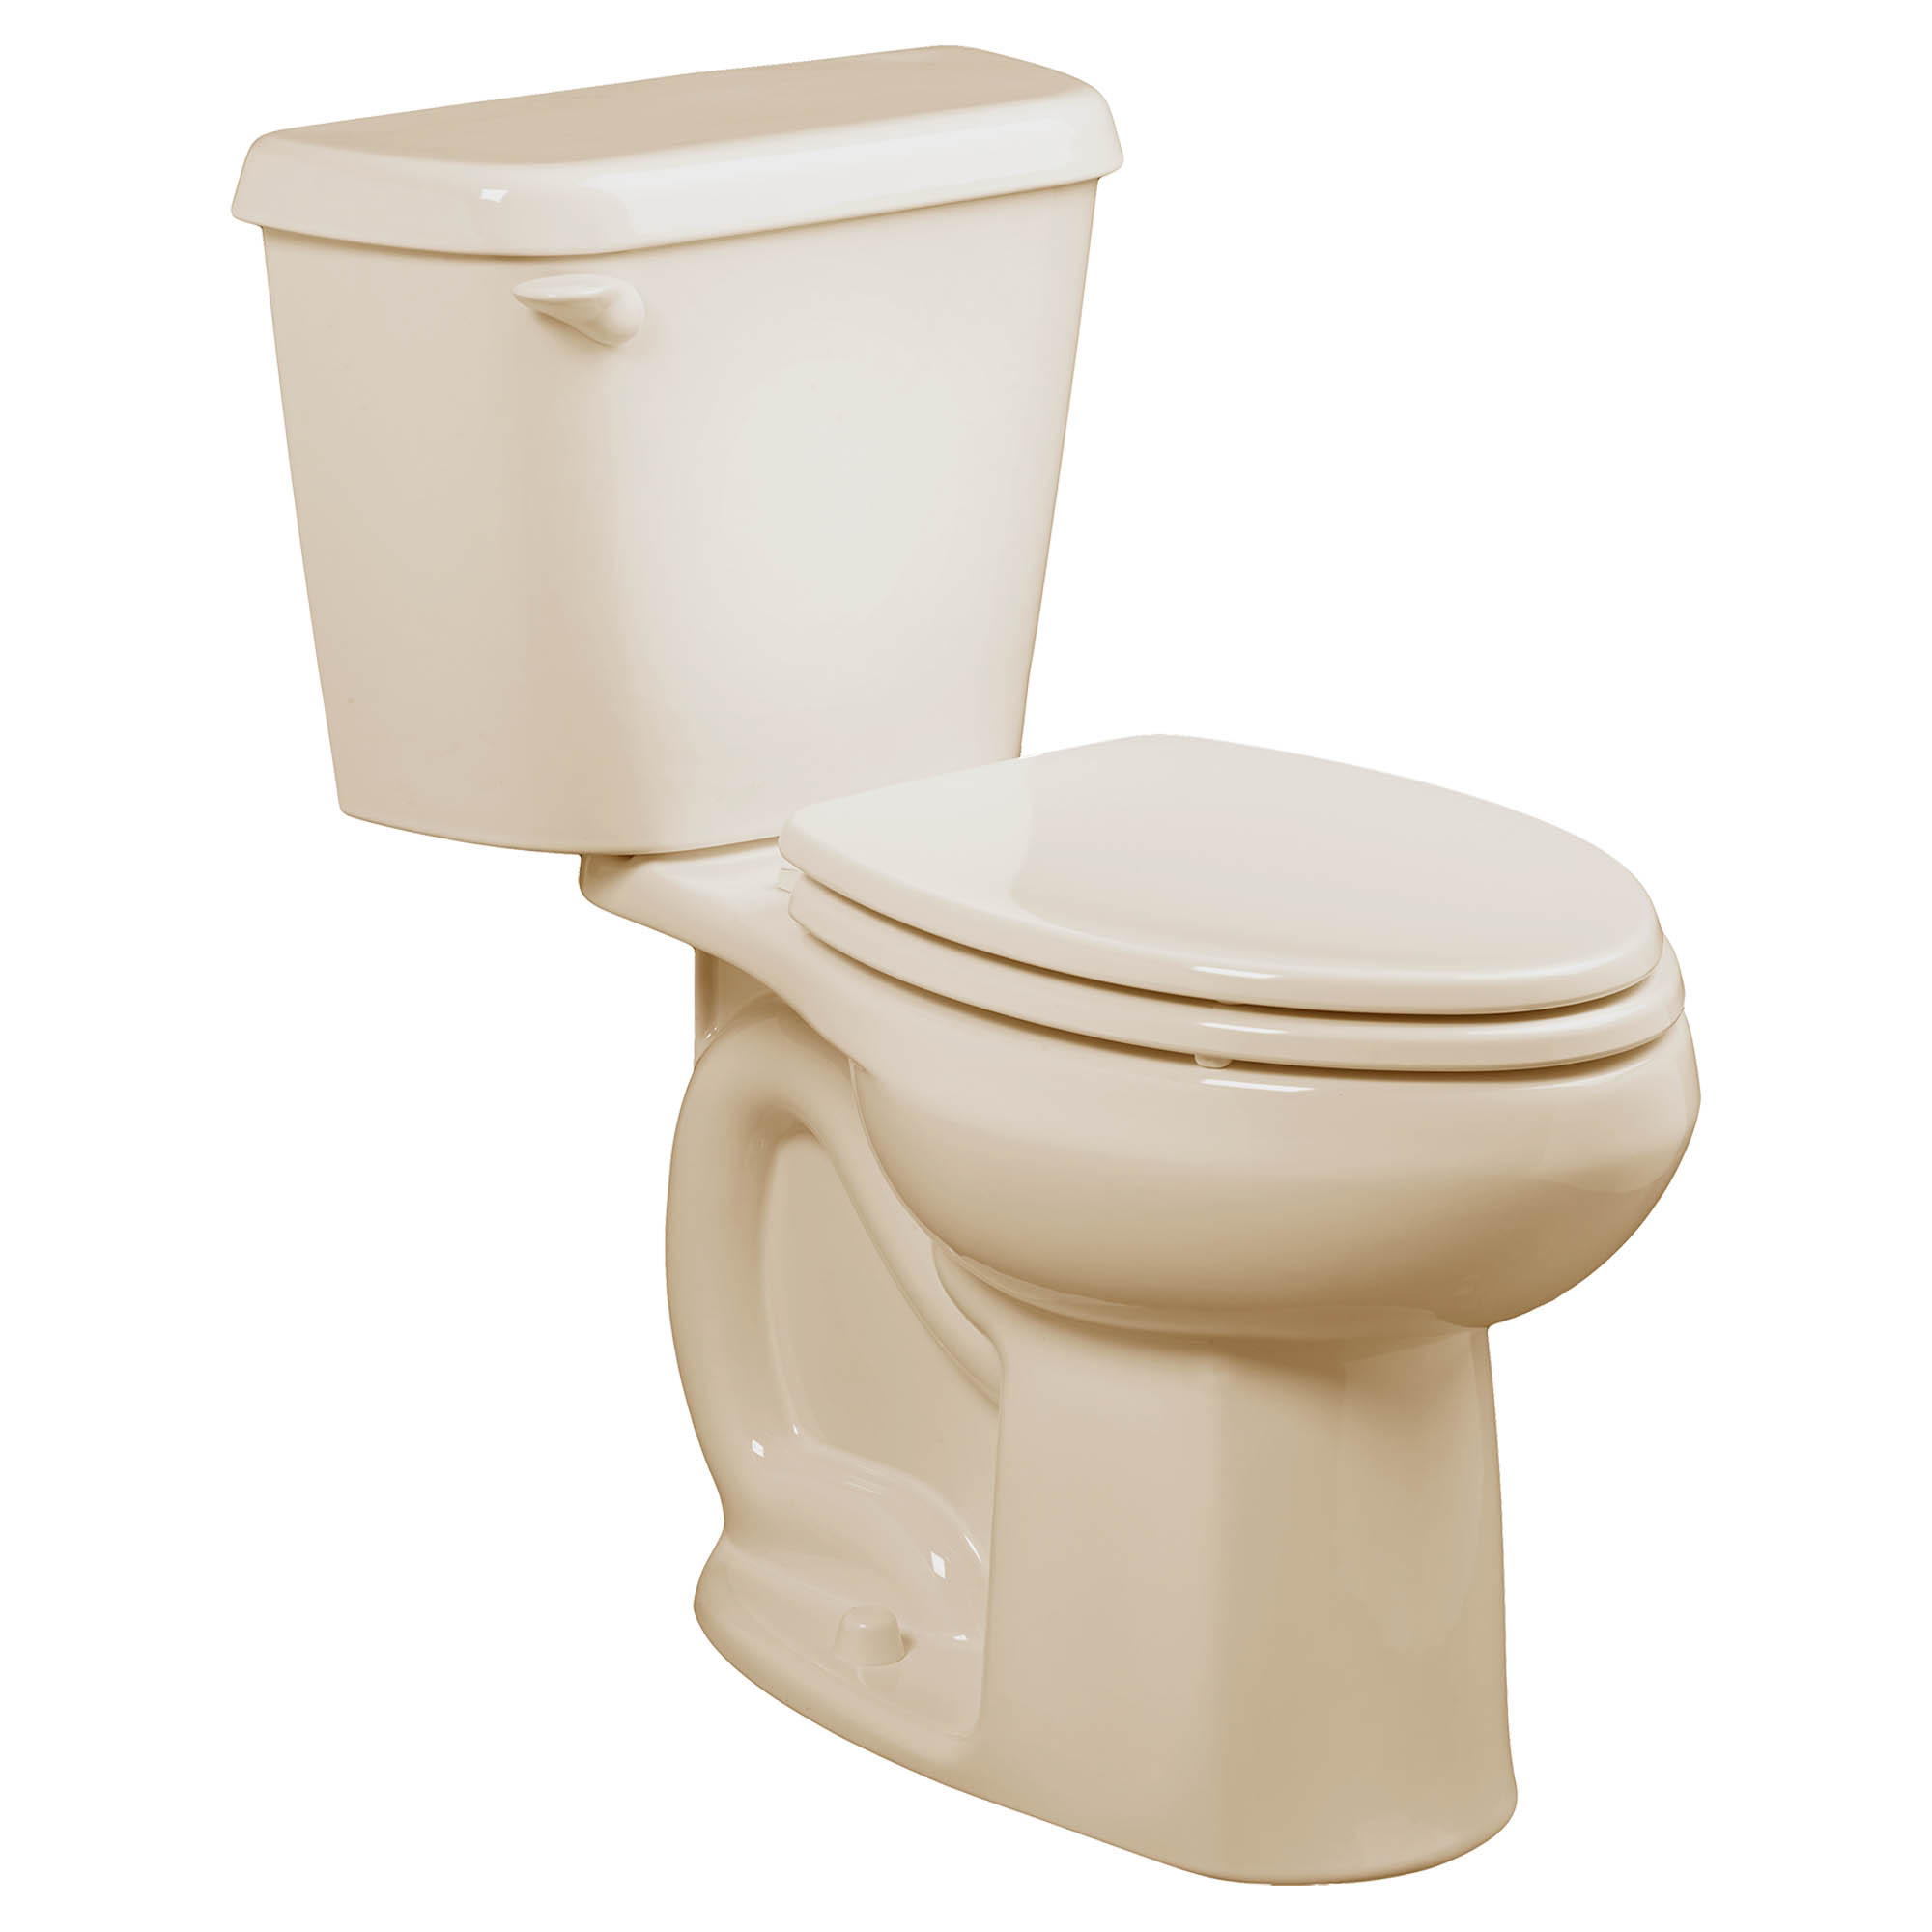 Toilette Colony, 2 pièces, 1,28 gpc/4,8 lpc,  à cuvette allongée à hauteur régulière, à encastrer 10 po, sans siège